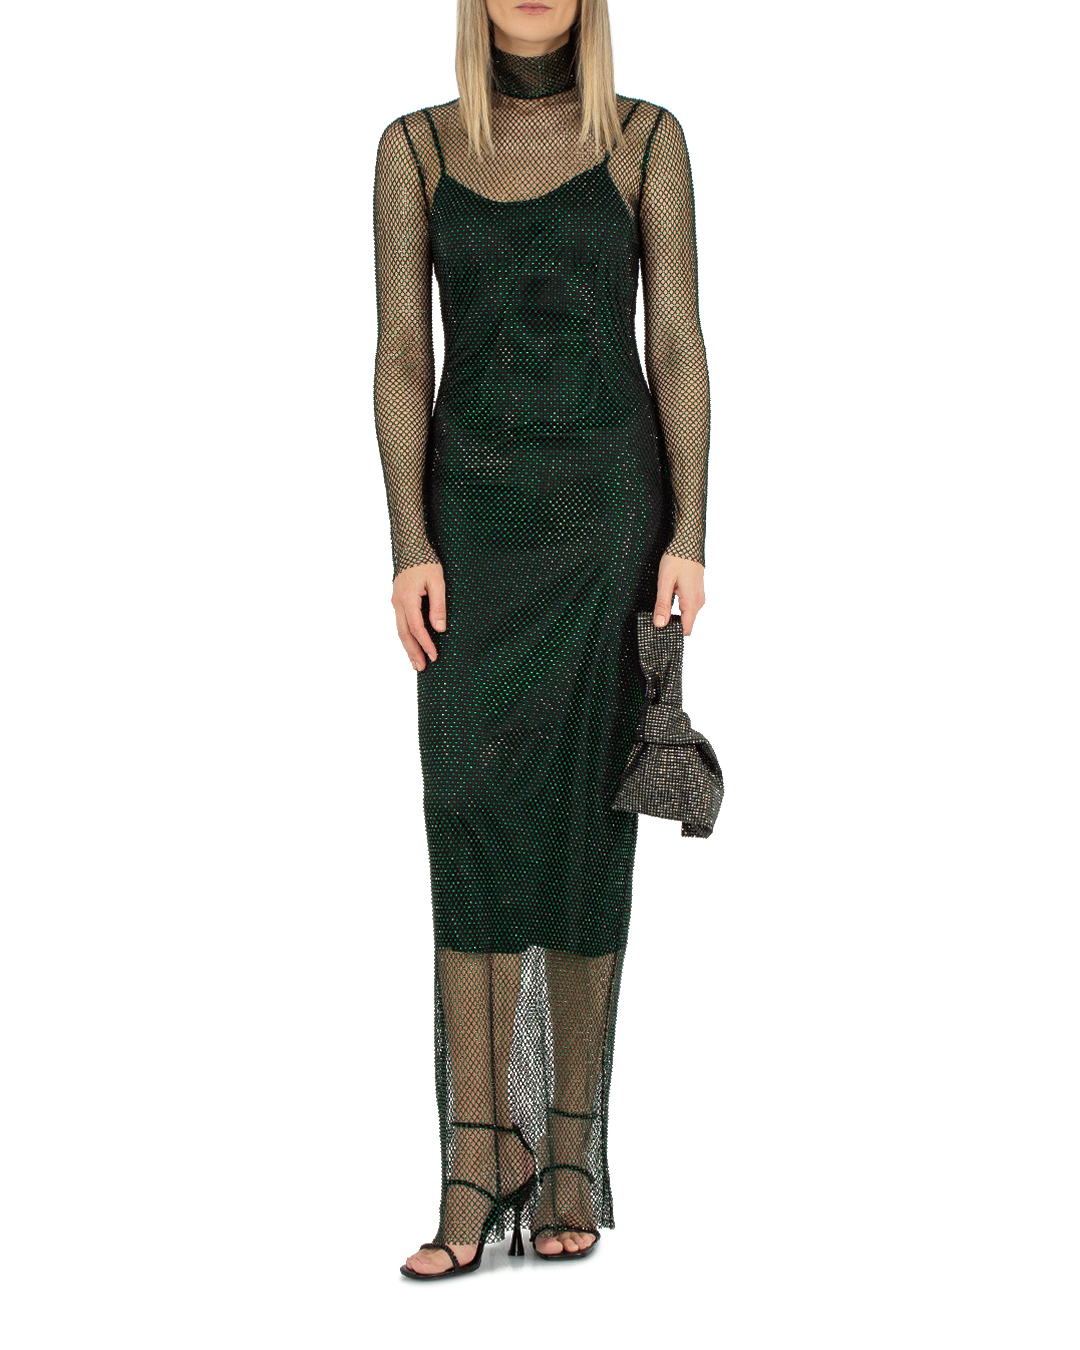 платье SOLANGEL SCDW23-082/2 черный+зеленый m, размер m, цвет черный+зеленый SCDW23-082/2 SCDW23-082/2 черный+зеленый m - фото 2